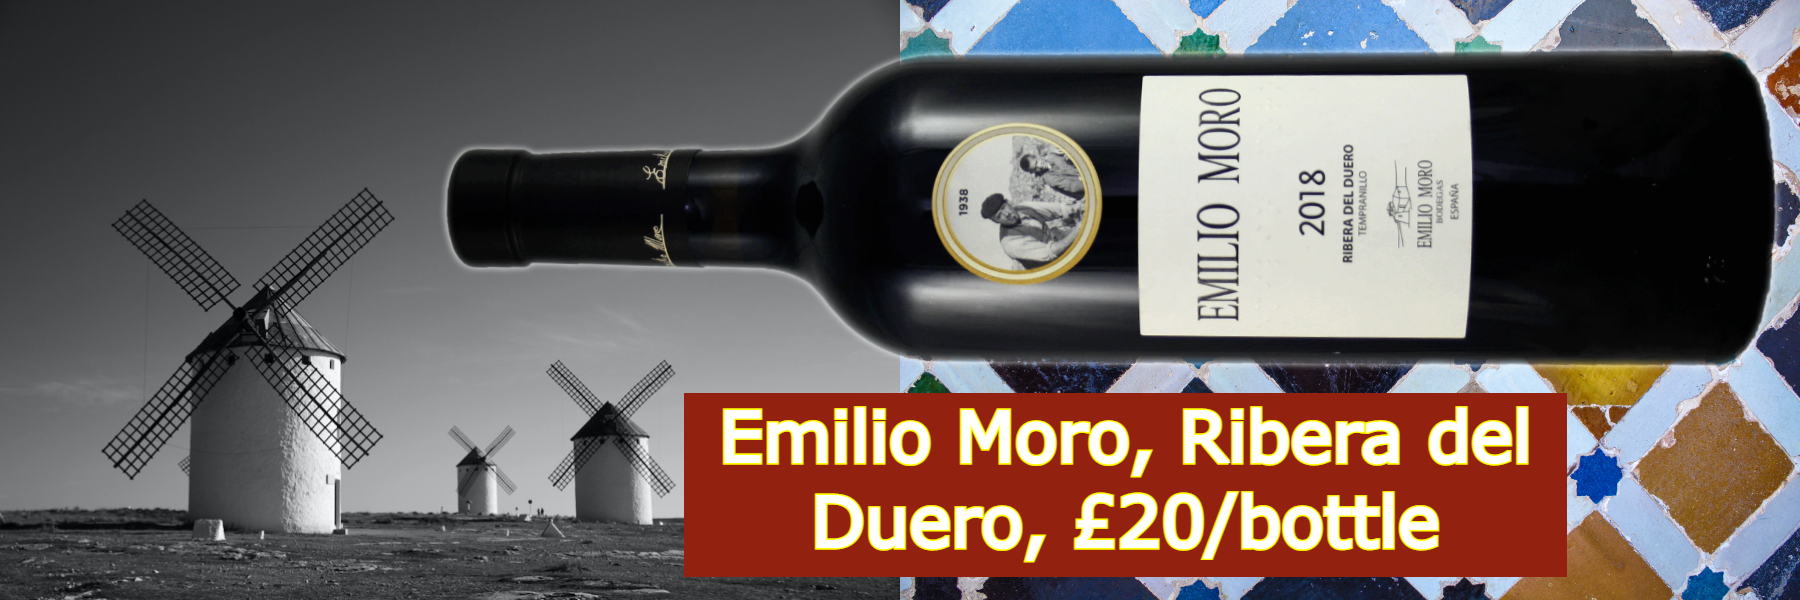 Buy Emilio Moro - Ribera del Duero 2018 - £20/bottle